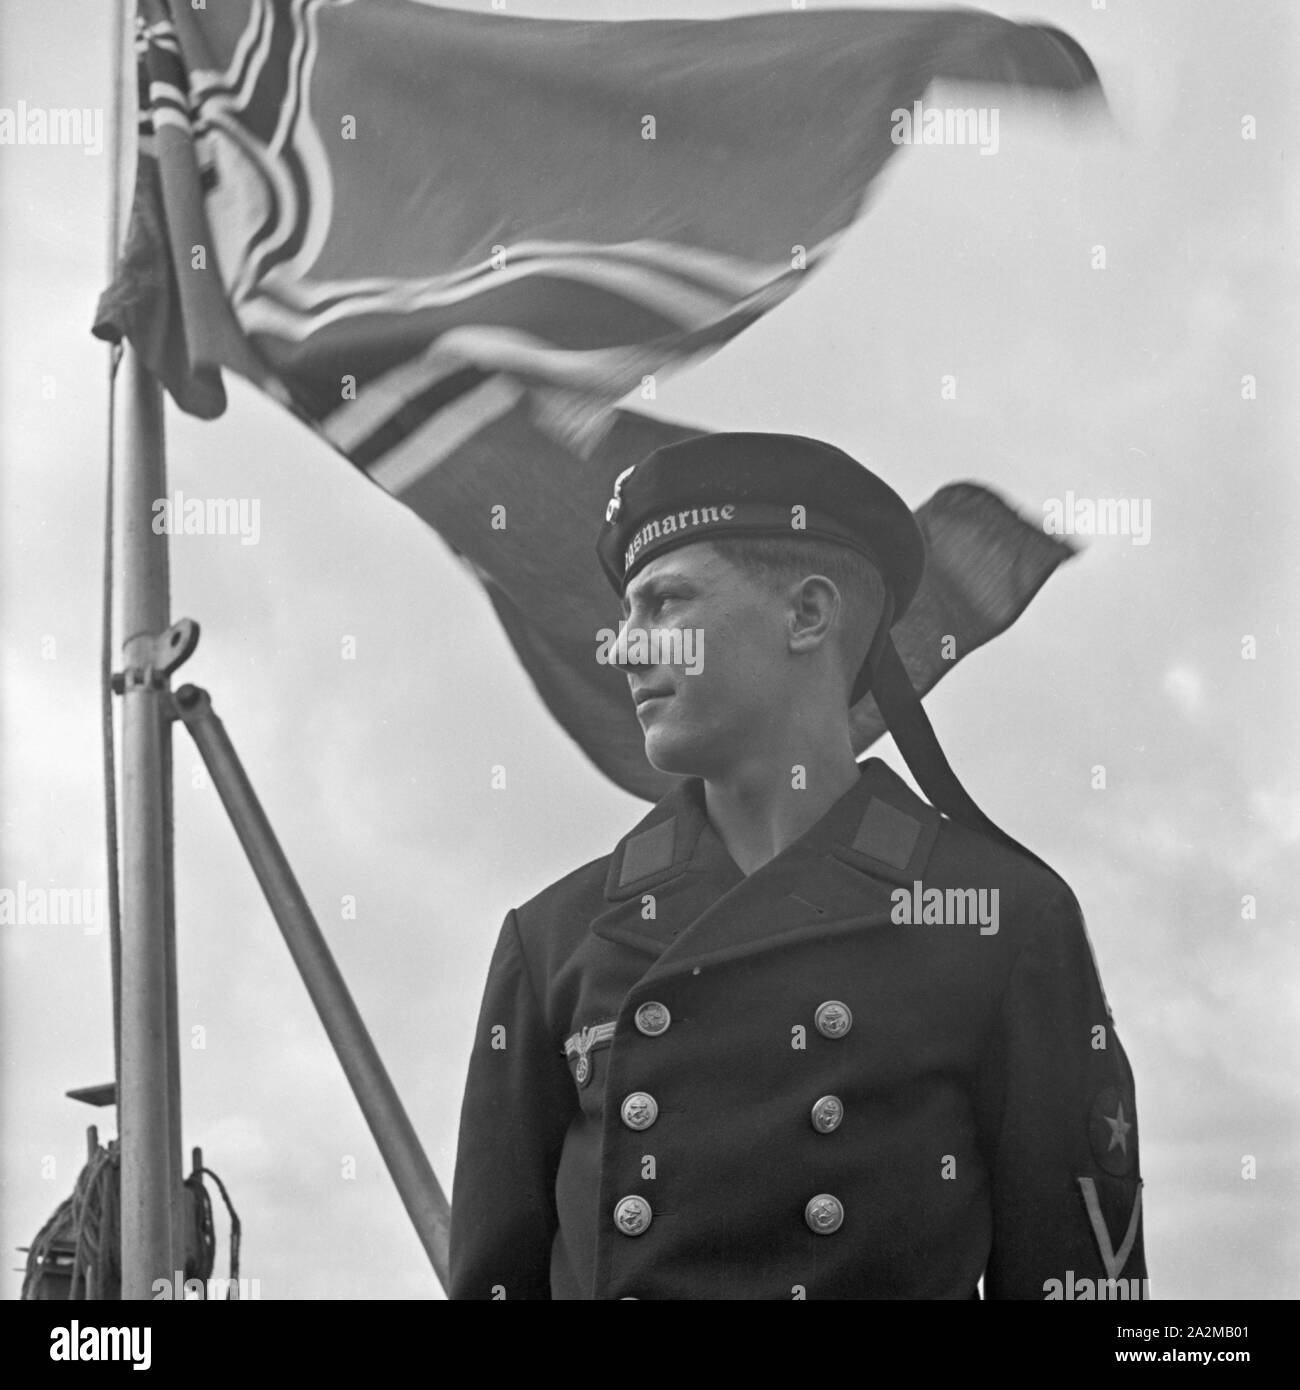 Original-Bildunterschrift: Porträt eines Matrosen der deutschen Kriegsmarine, Deutschland 1940er Jahre. Porträt eines Soldaten der Deutschen Marine, Deutschland 1940. Stockfoto